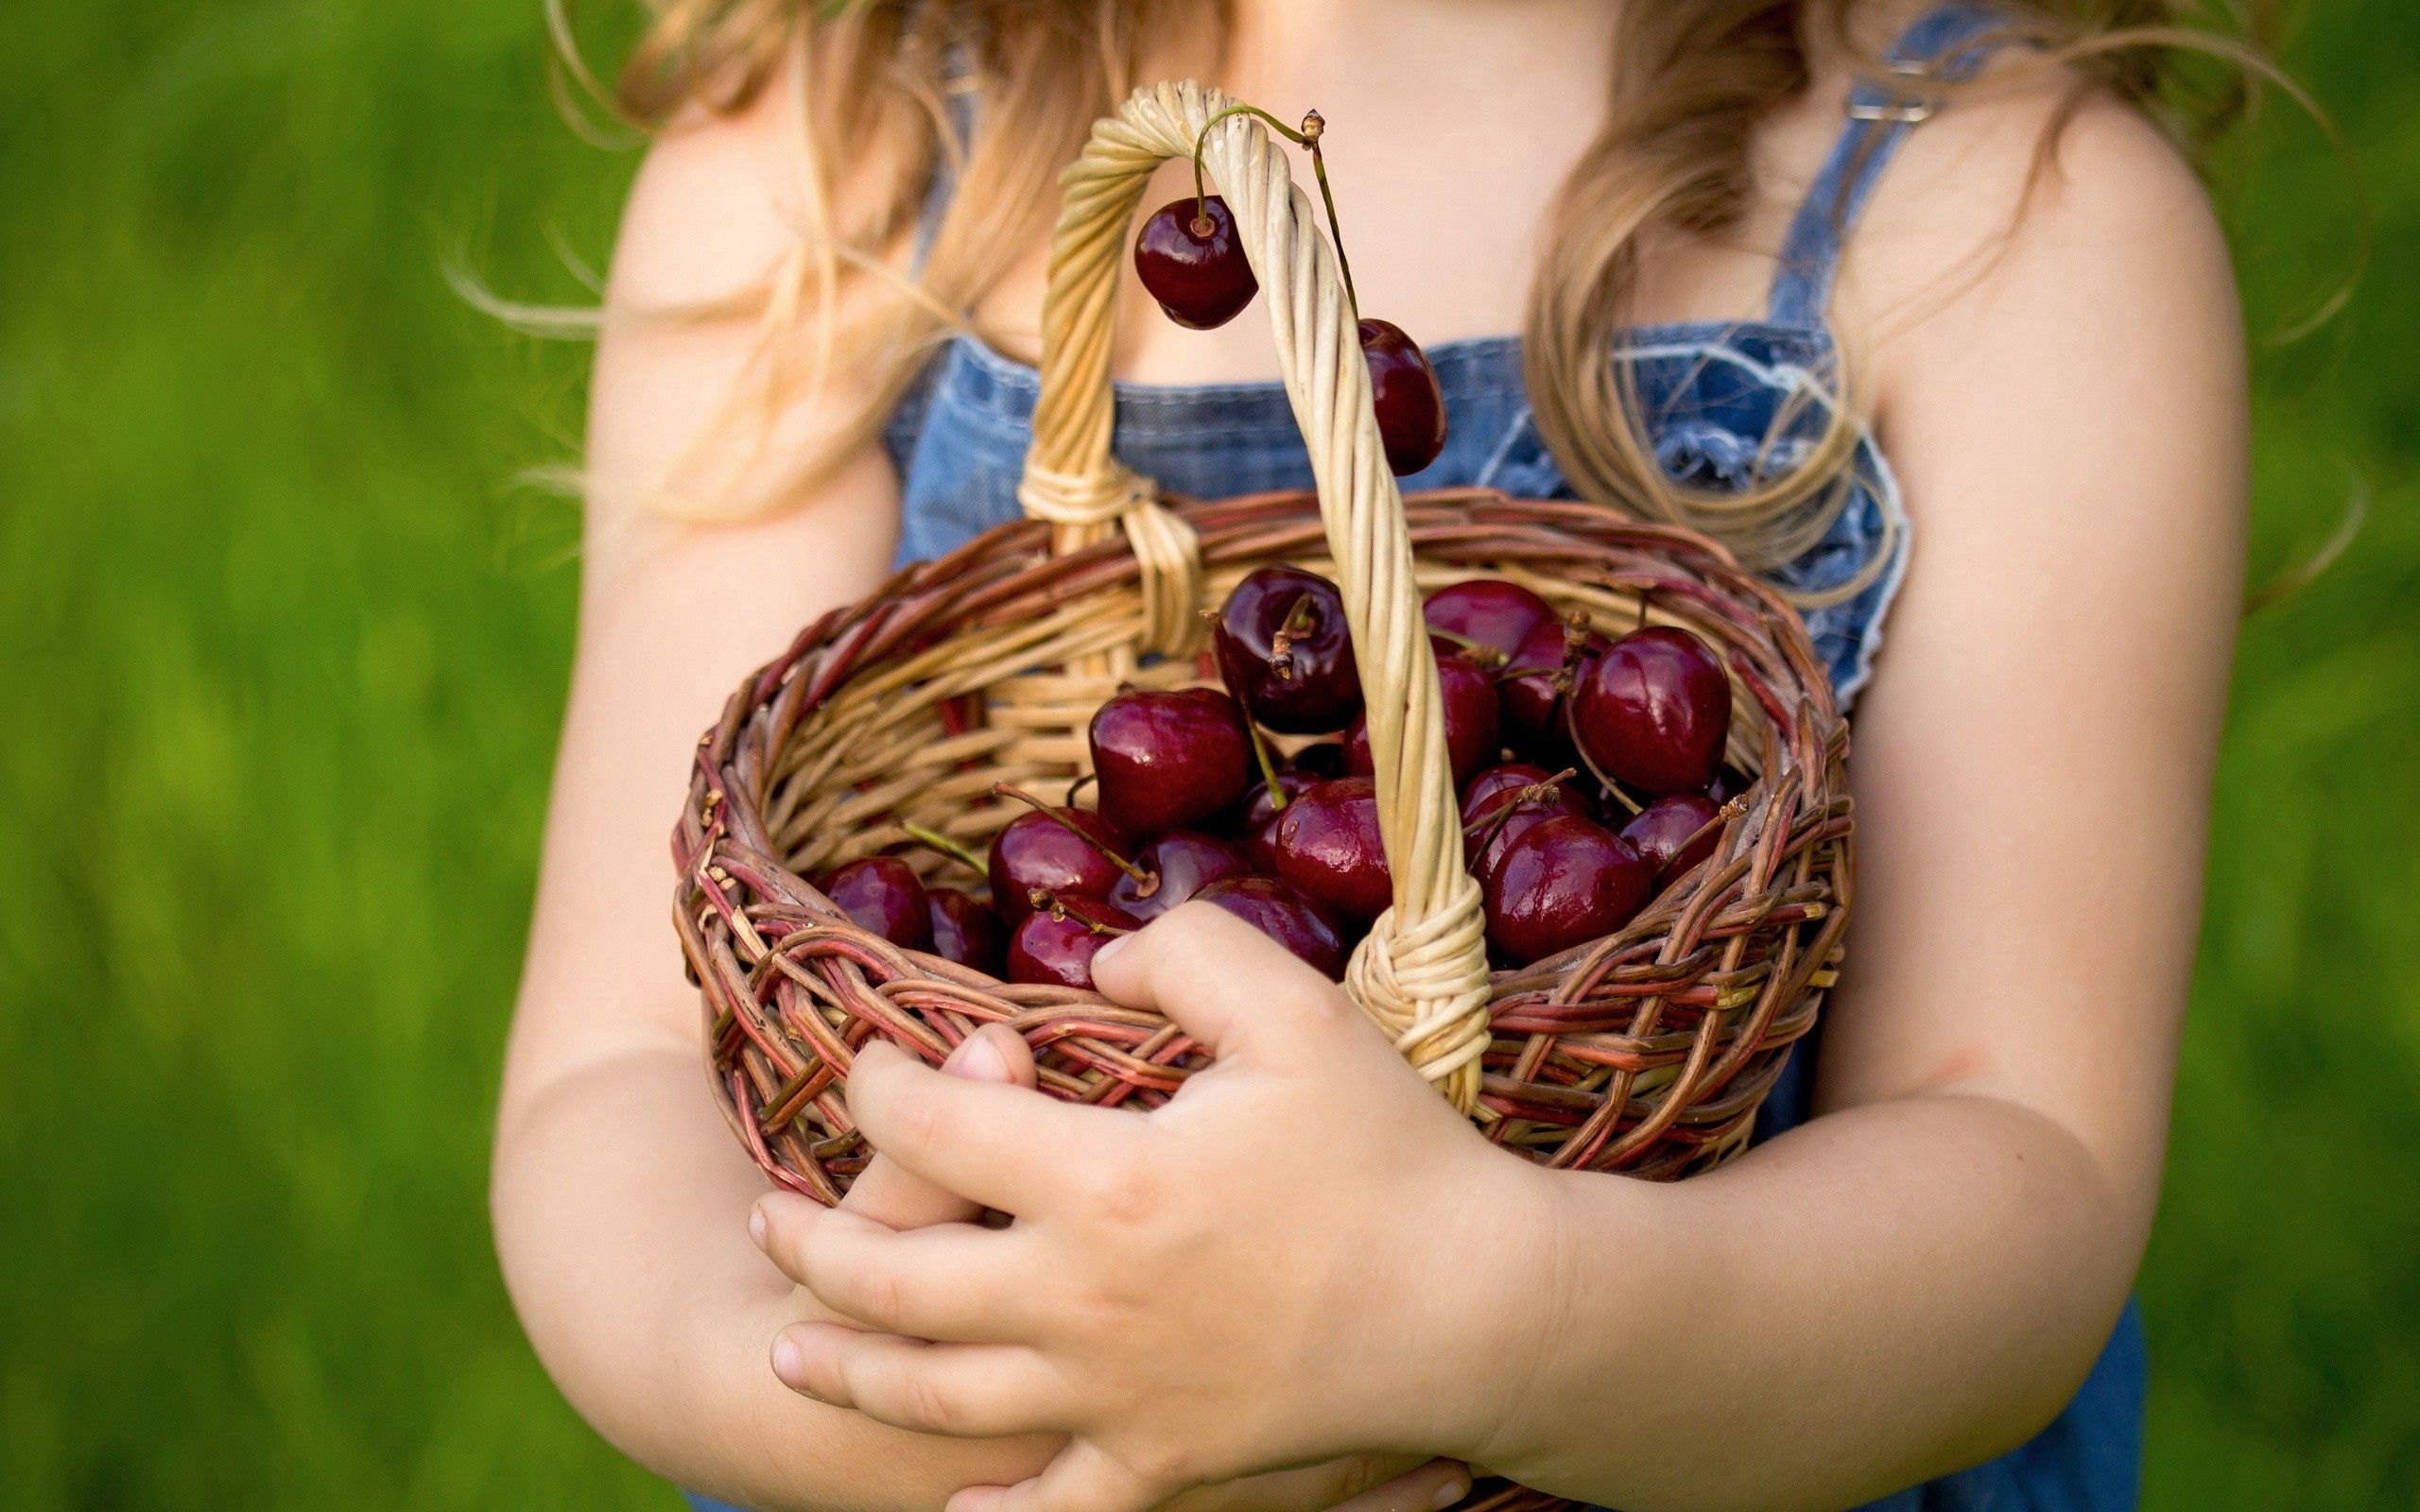 Sweet Cherry hands, basket, food, berries 4k Wallpaper